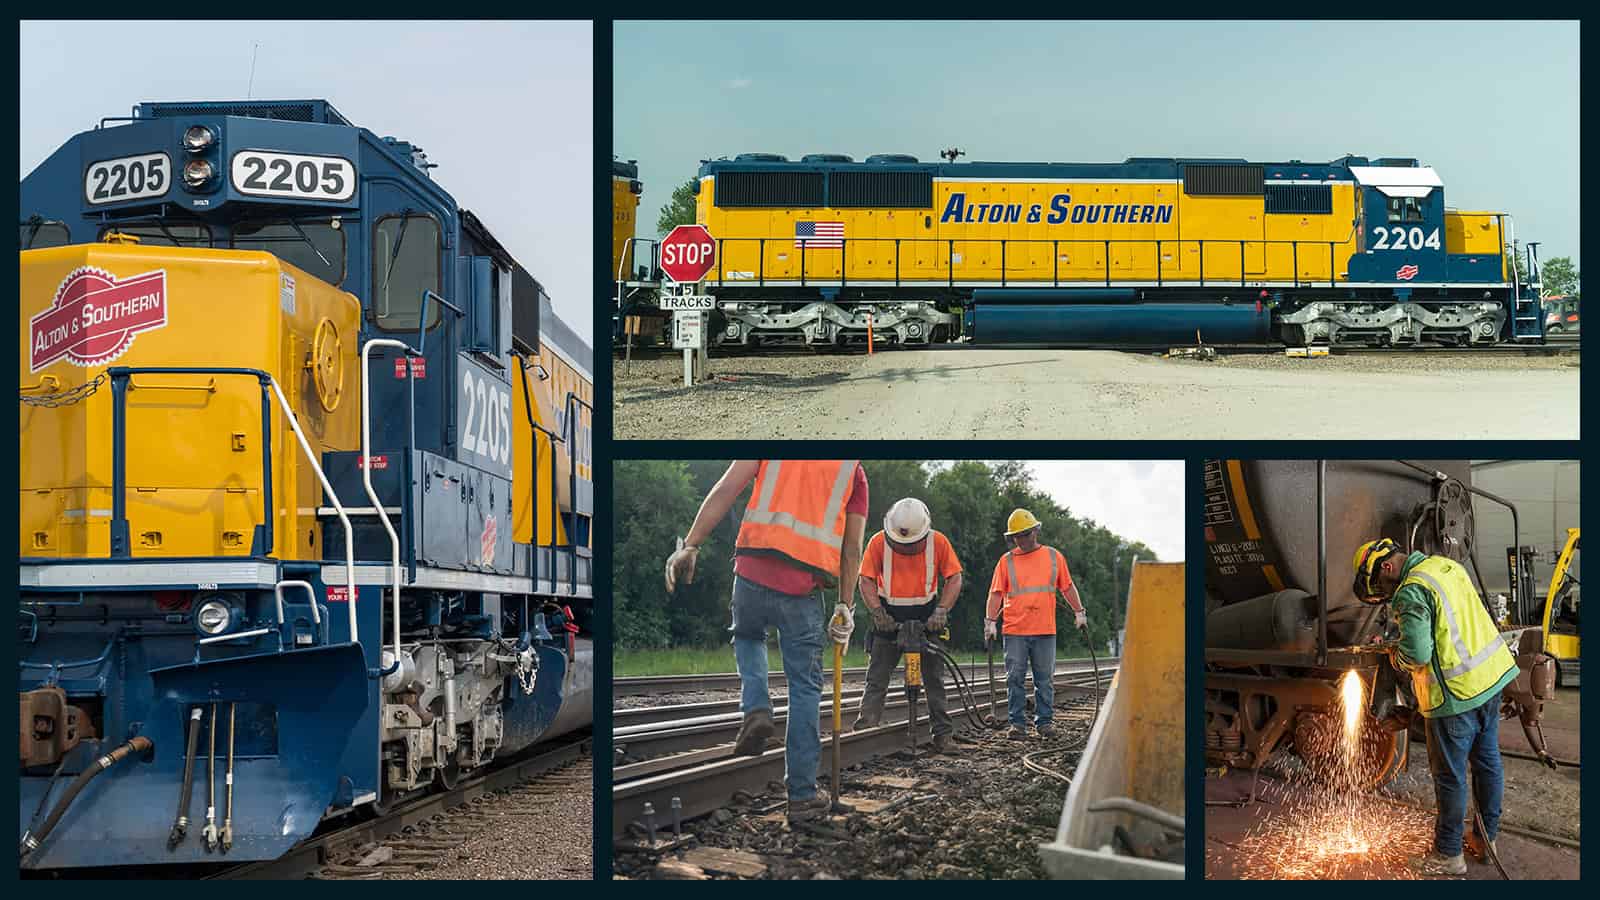 Alton & Southern - Train Photography